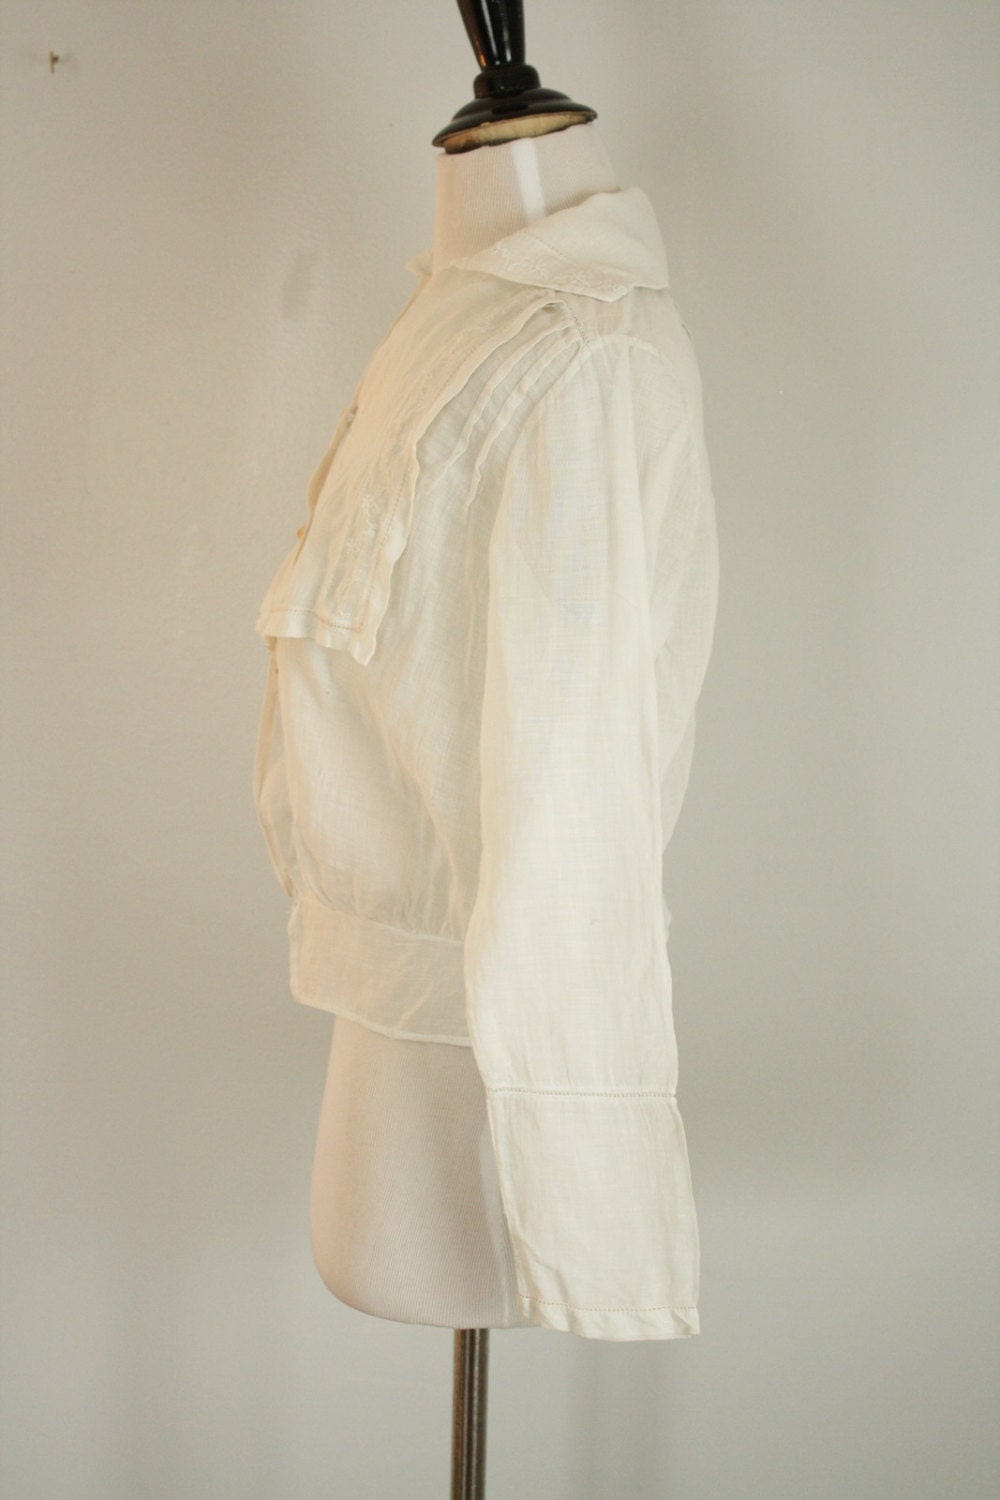 1910s 1920s blouse antique white cotton blouse by 1932vintage